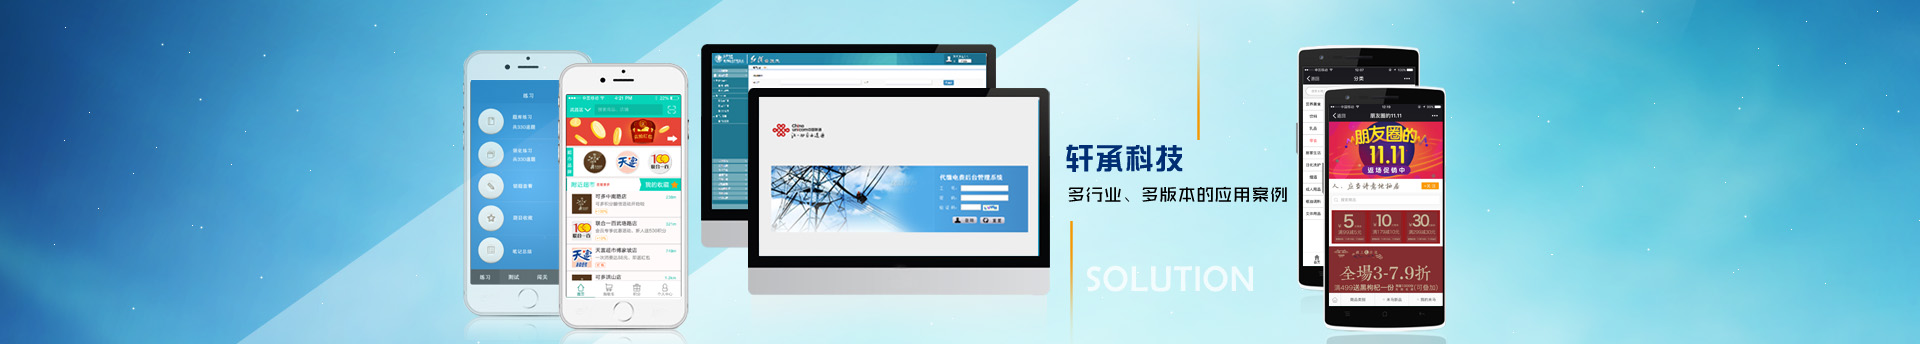 武汉软件开发-武汉网站建设-武汉APP开发-武汉微信小程序开发-武汉数据可视化开发—公司地址